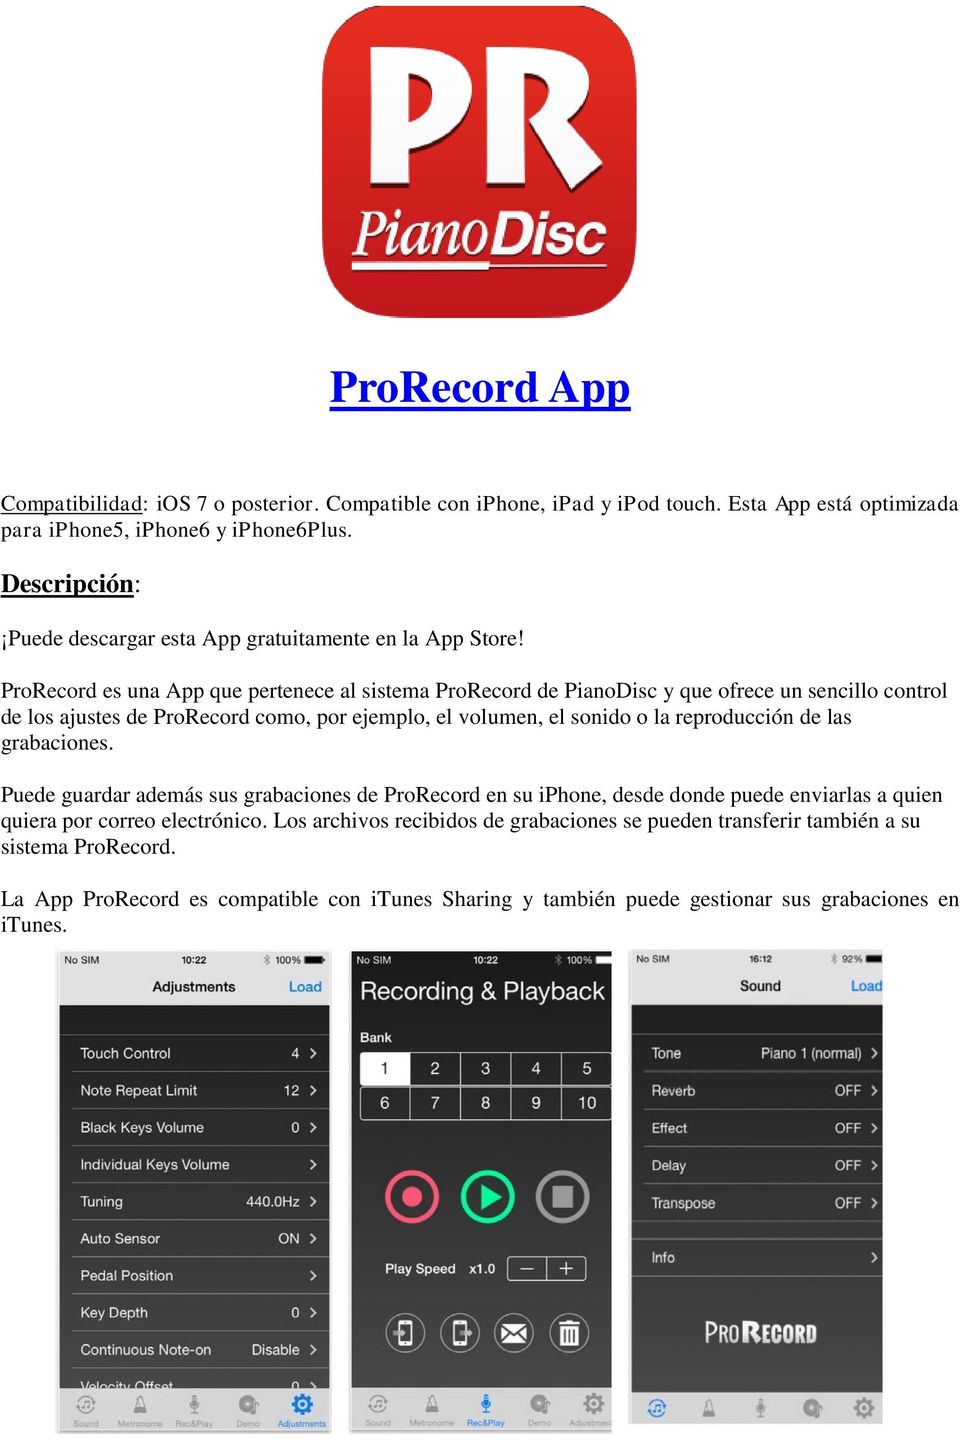 ProRecord es una App que pertenece al sistema ProRecord de PianoDisc y que ofrece un sencillo control de los ajustes de ProRecord como, por ejemplo, el volumen, el sonido o la reproducción